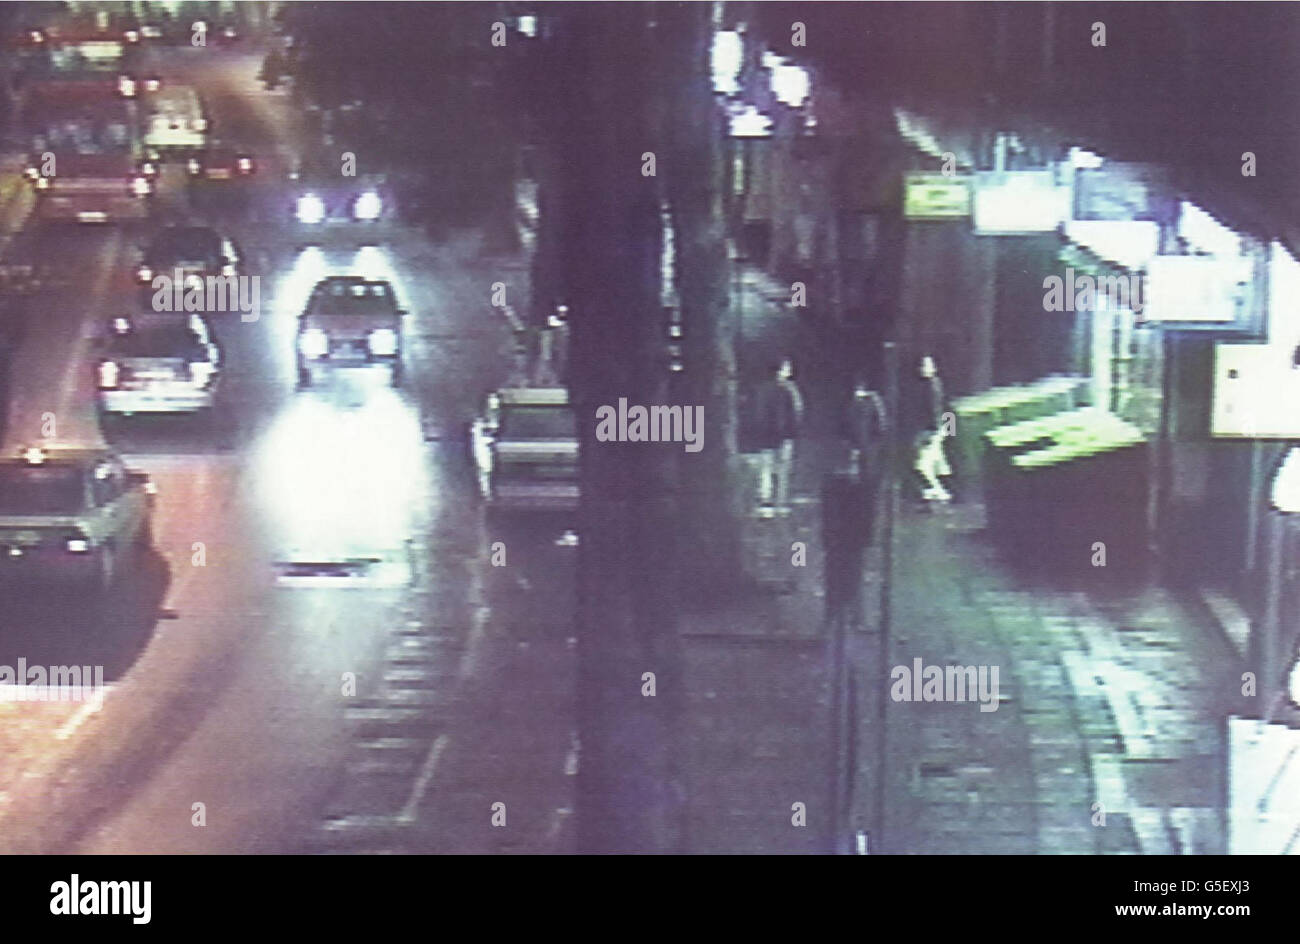 Video rilasciato dalla polizia metropolitana , che mostra il Mall, Ealing, Londra ovest lo scorso Giovedi sera, come tre persone attraversano i sentieri sul lato destro della foto. La polizia crede che la persona nel mezzo del gruppo sia il bombardiere dell'automobile. Foto Stock